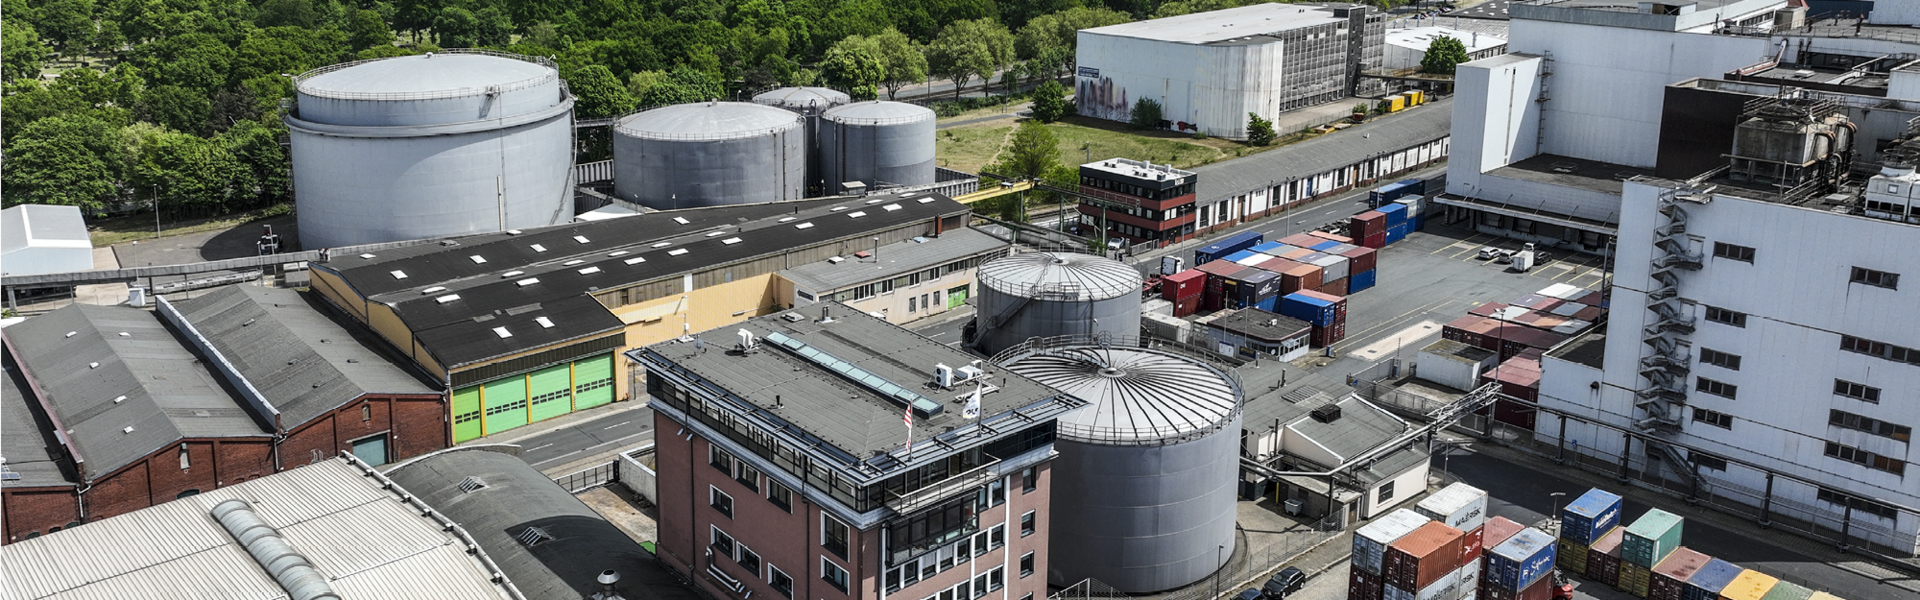 Tanklager Bremen Holz- und Fabrikhafen